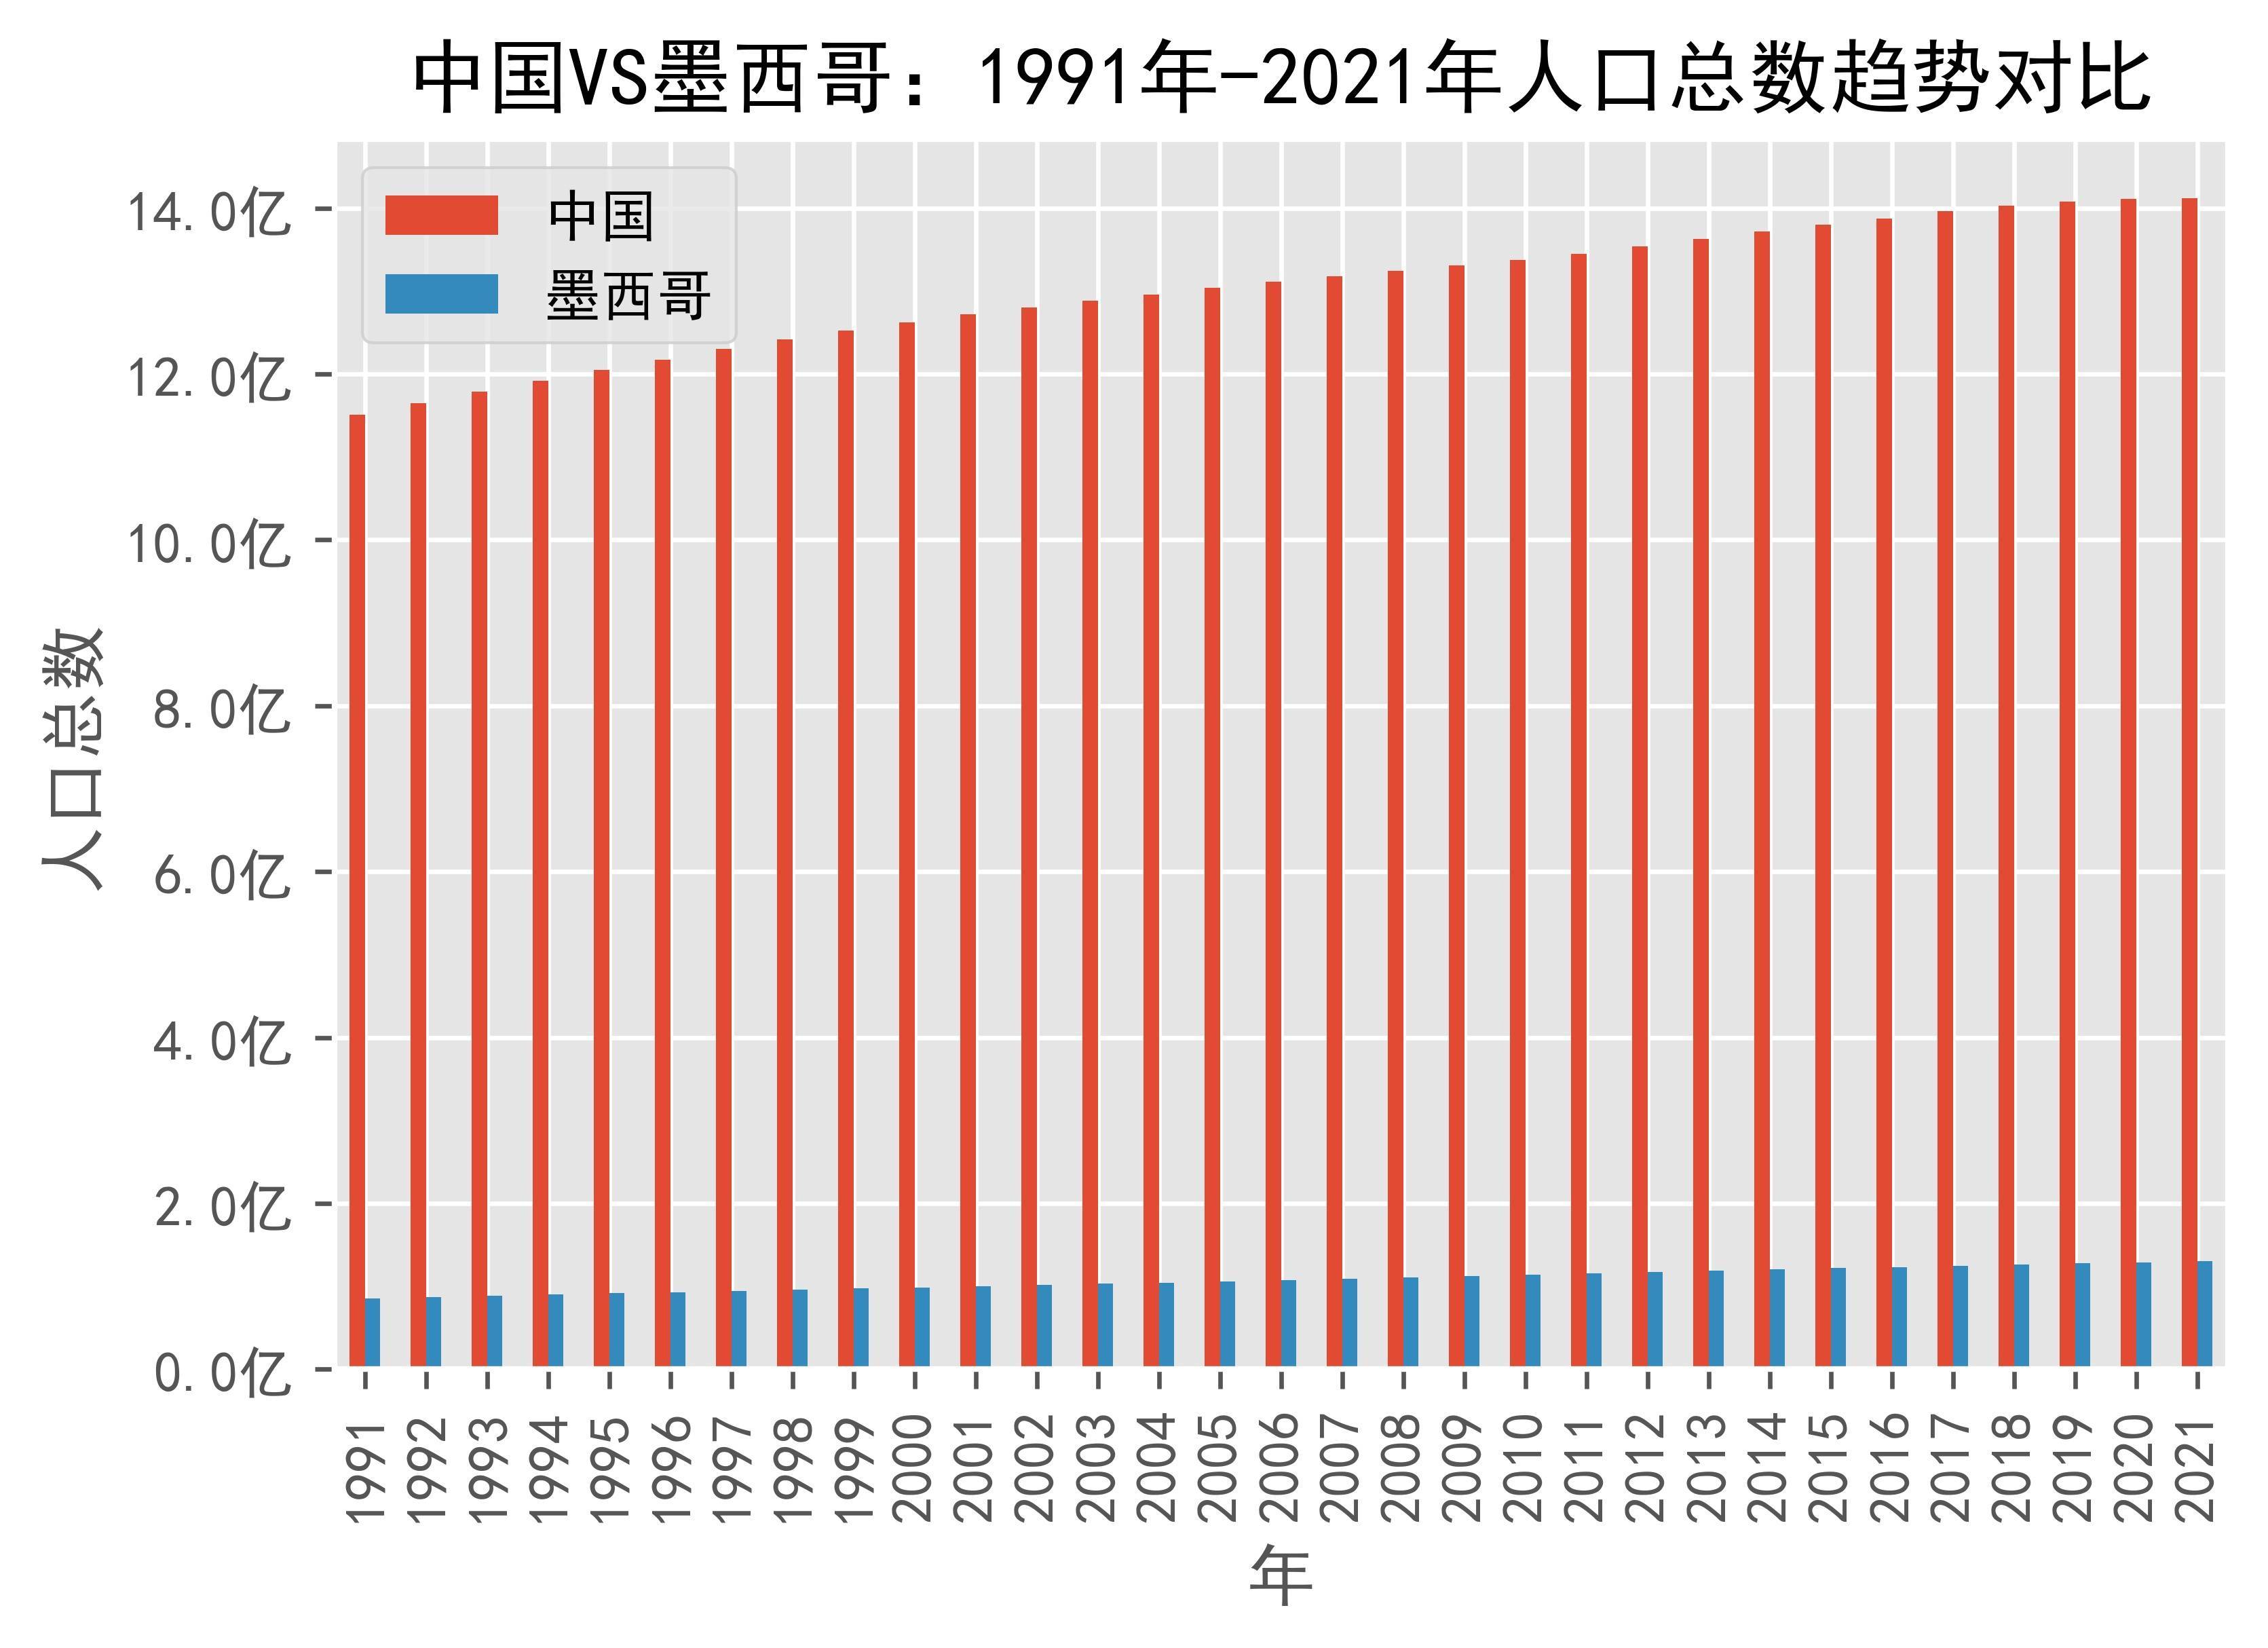 中国vs墨西哥人口总数趋势对比(1991年